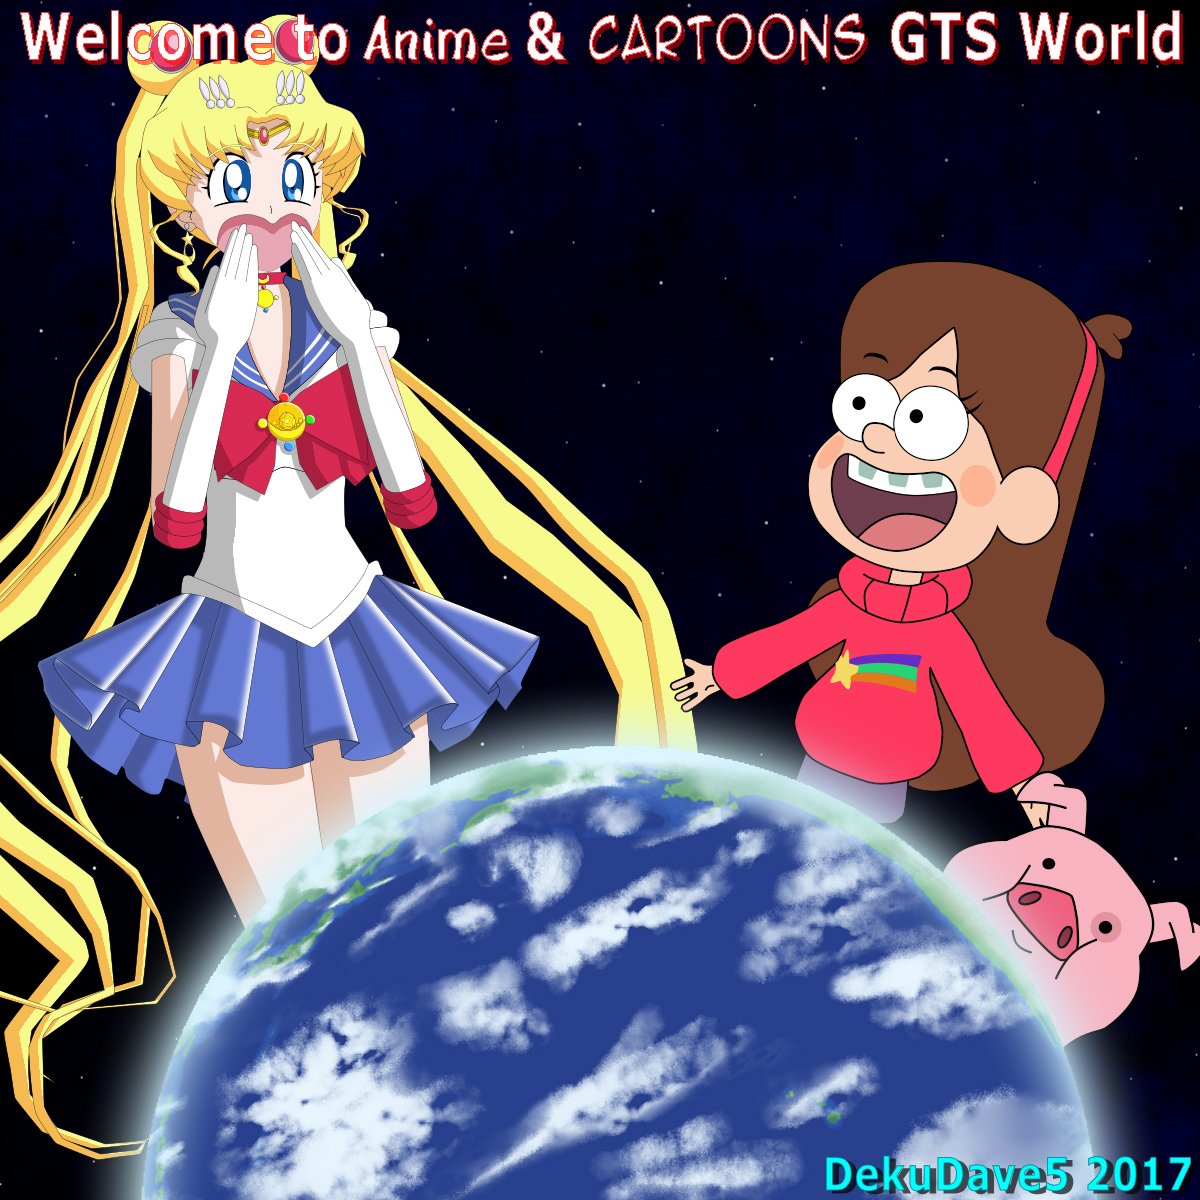 Anime and Cartoon GTS World